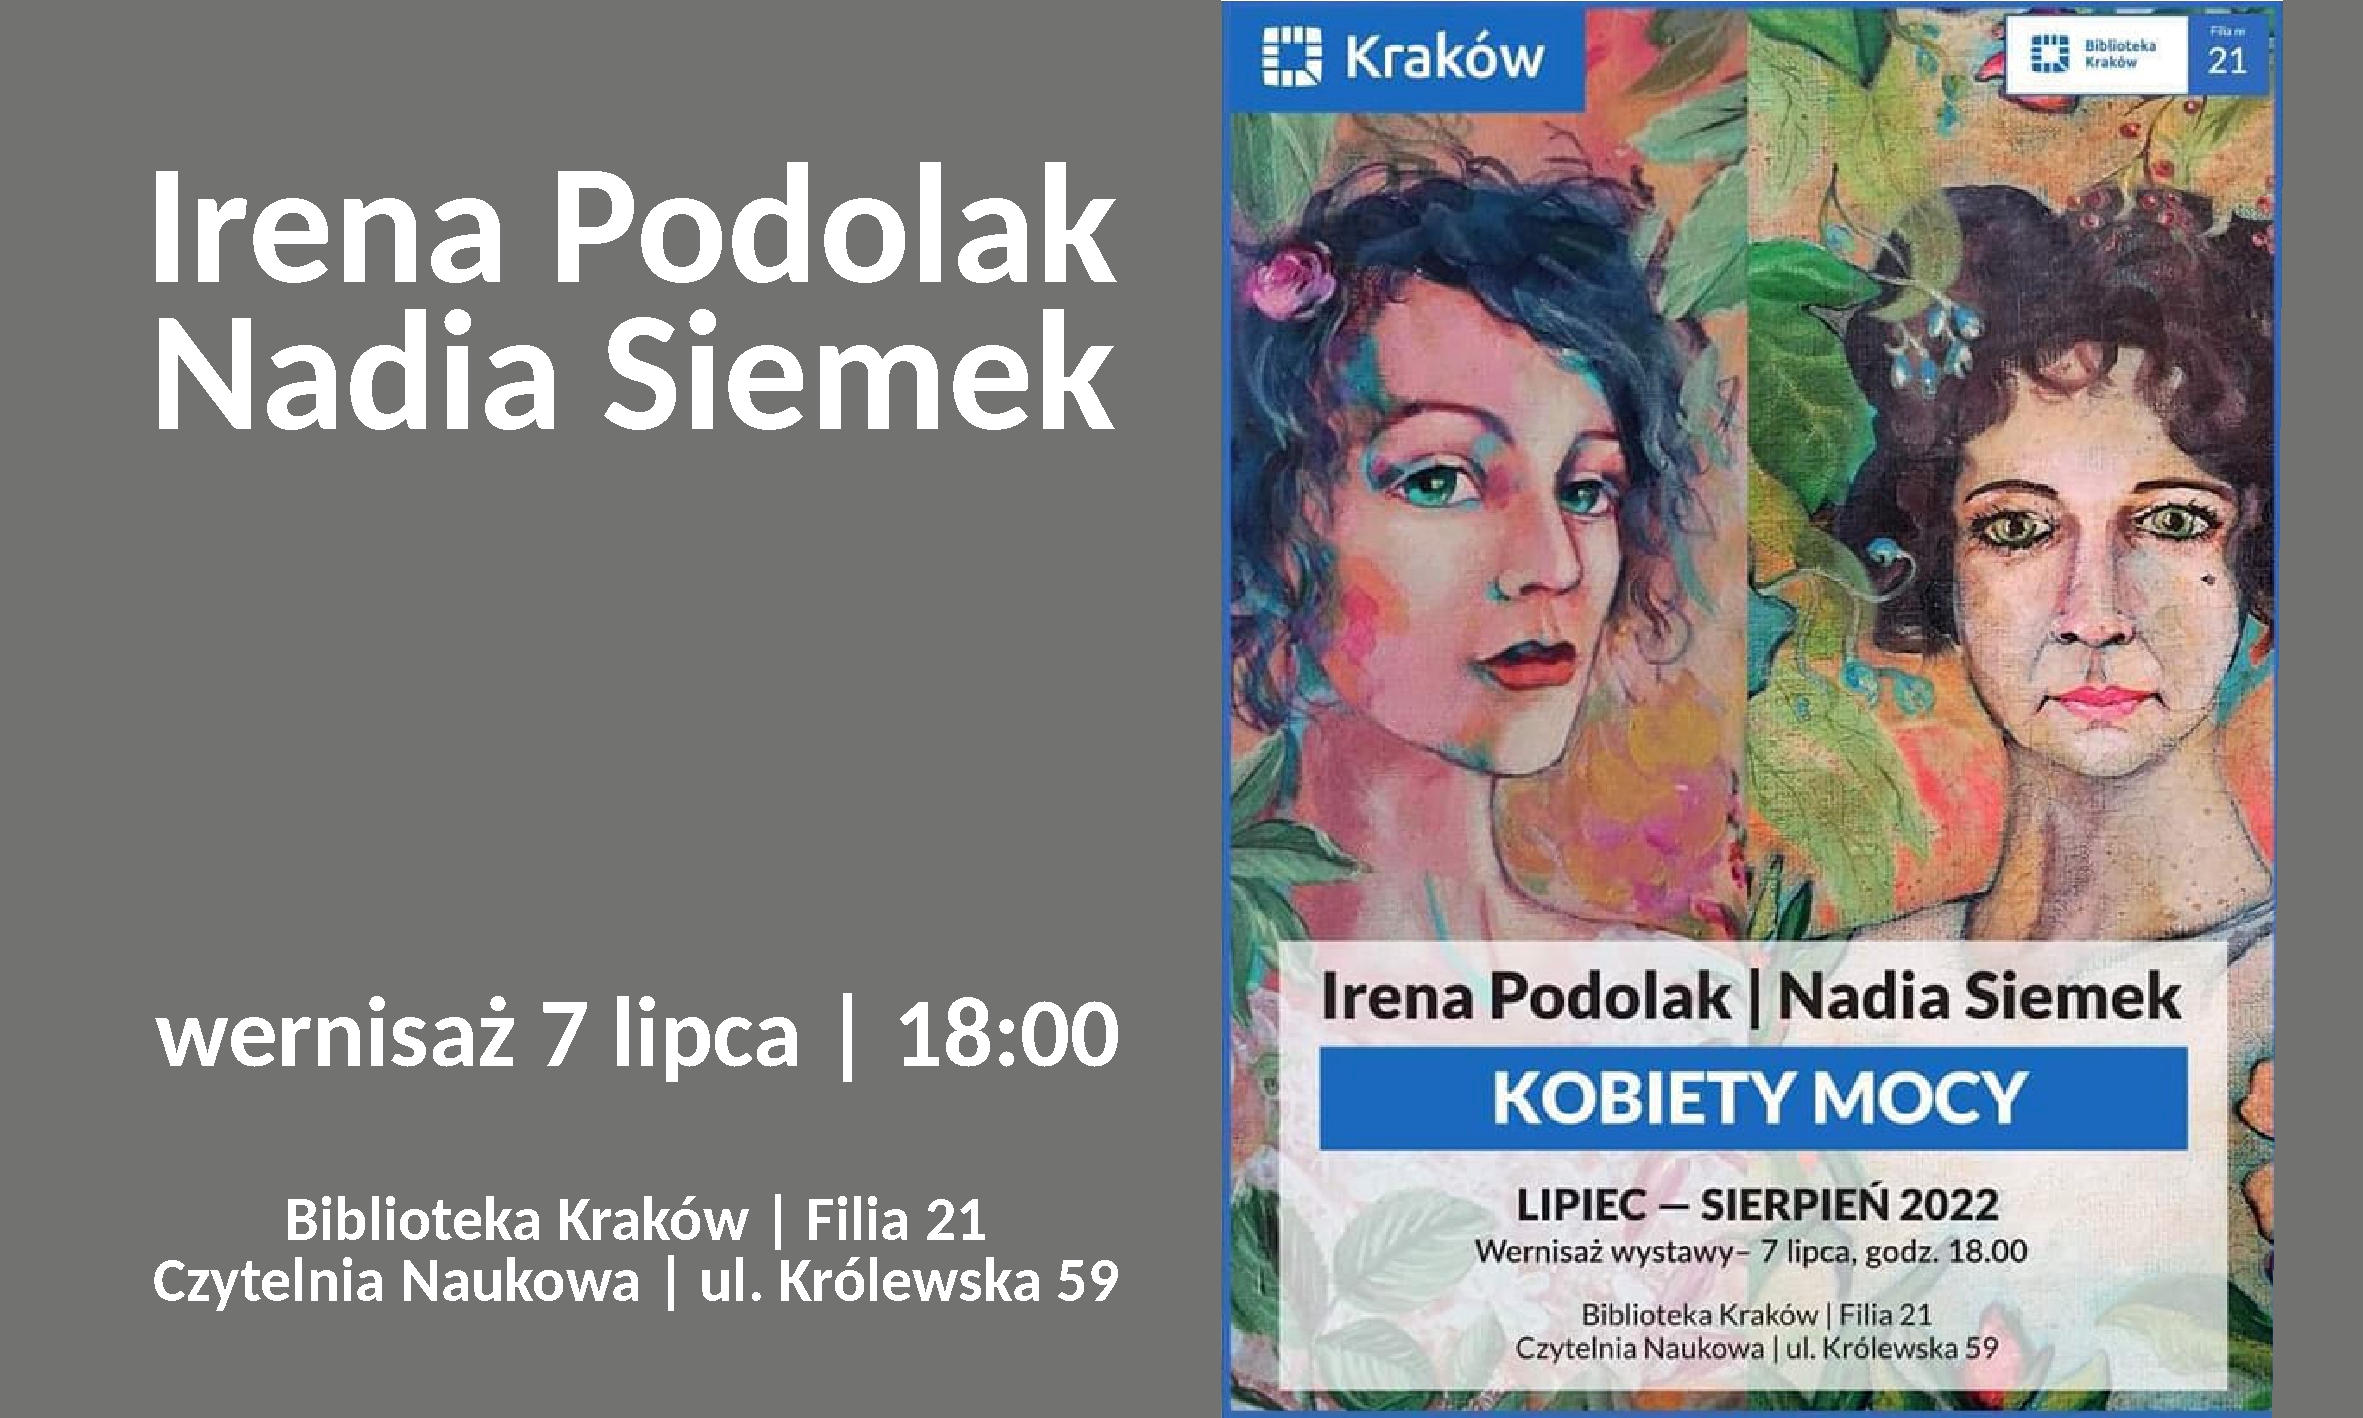 7.07.2022 | 18:00 | I. Podolak & N. Siemek